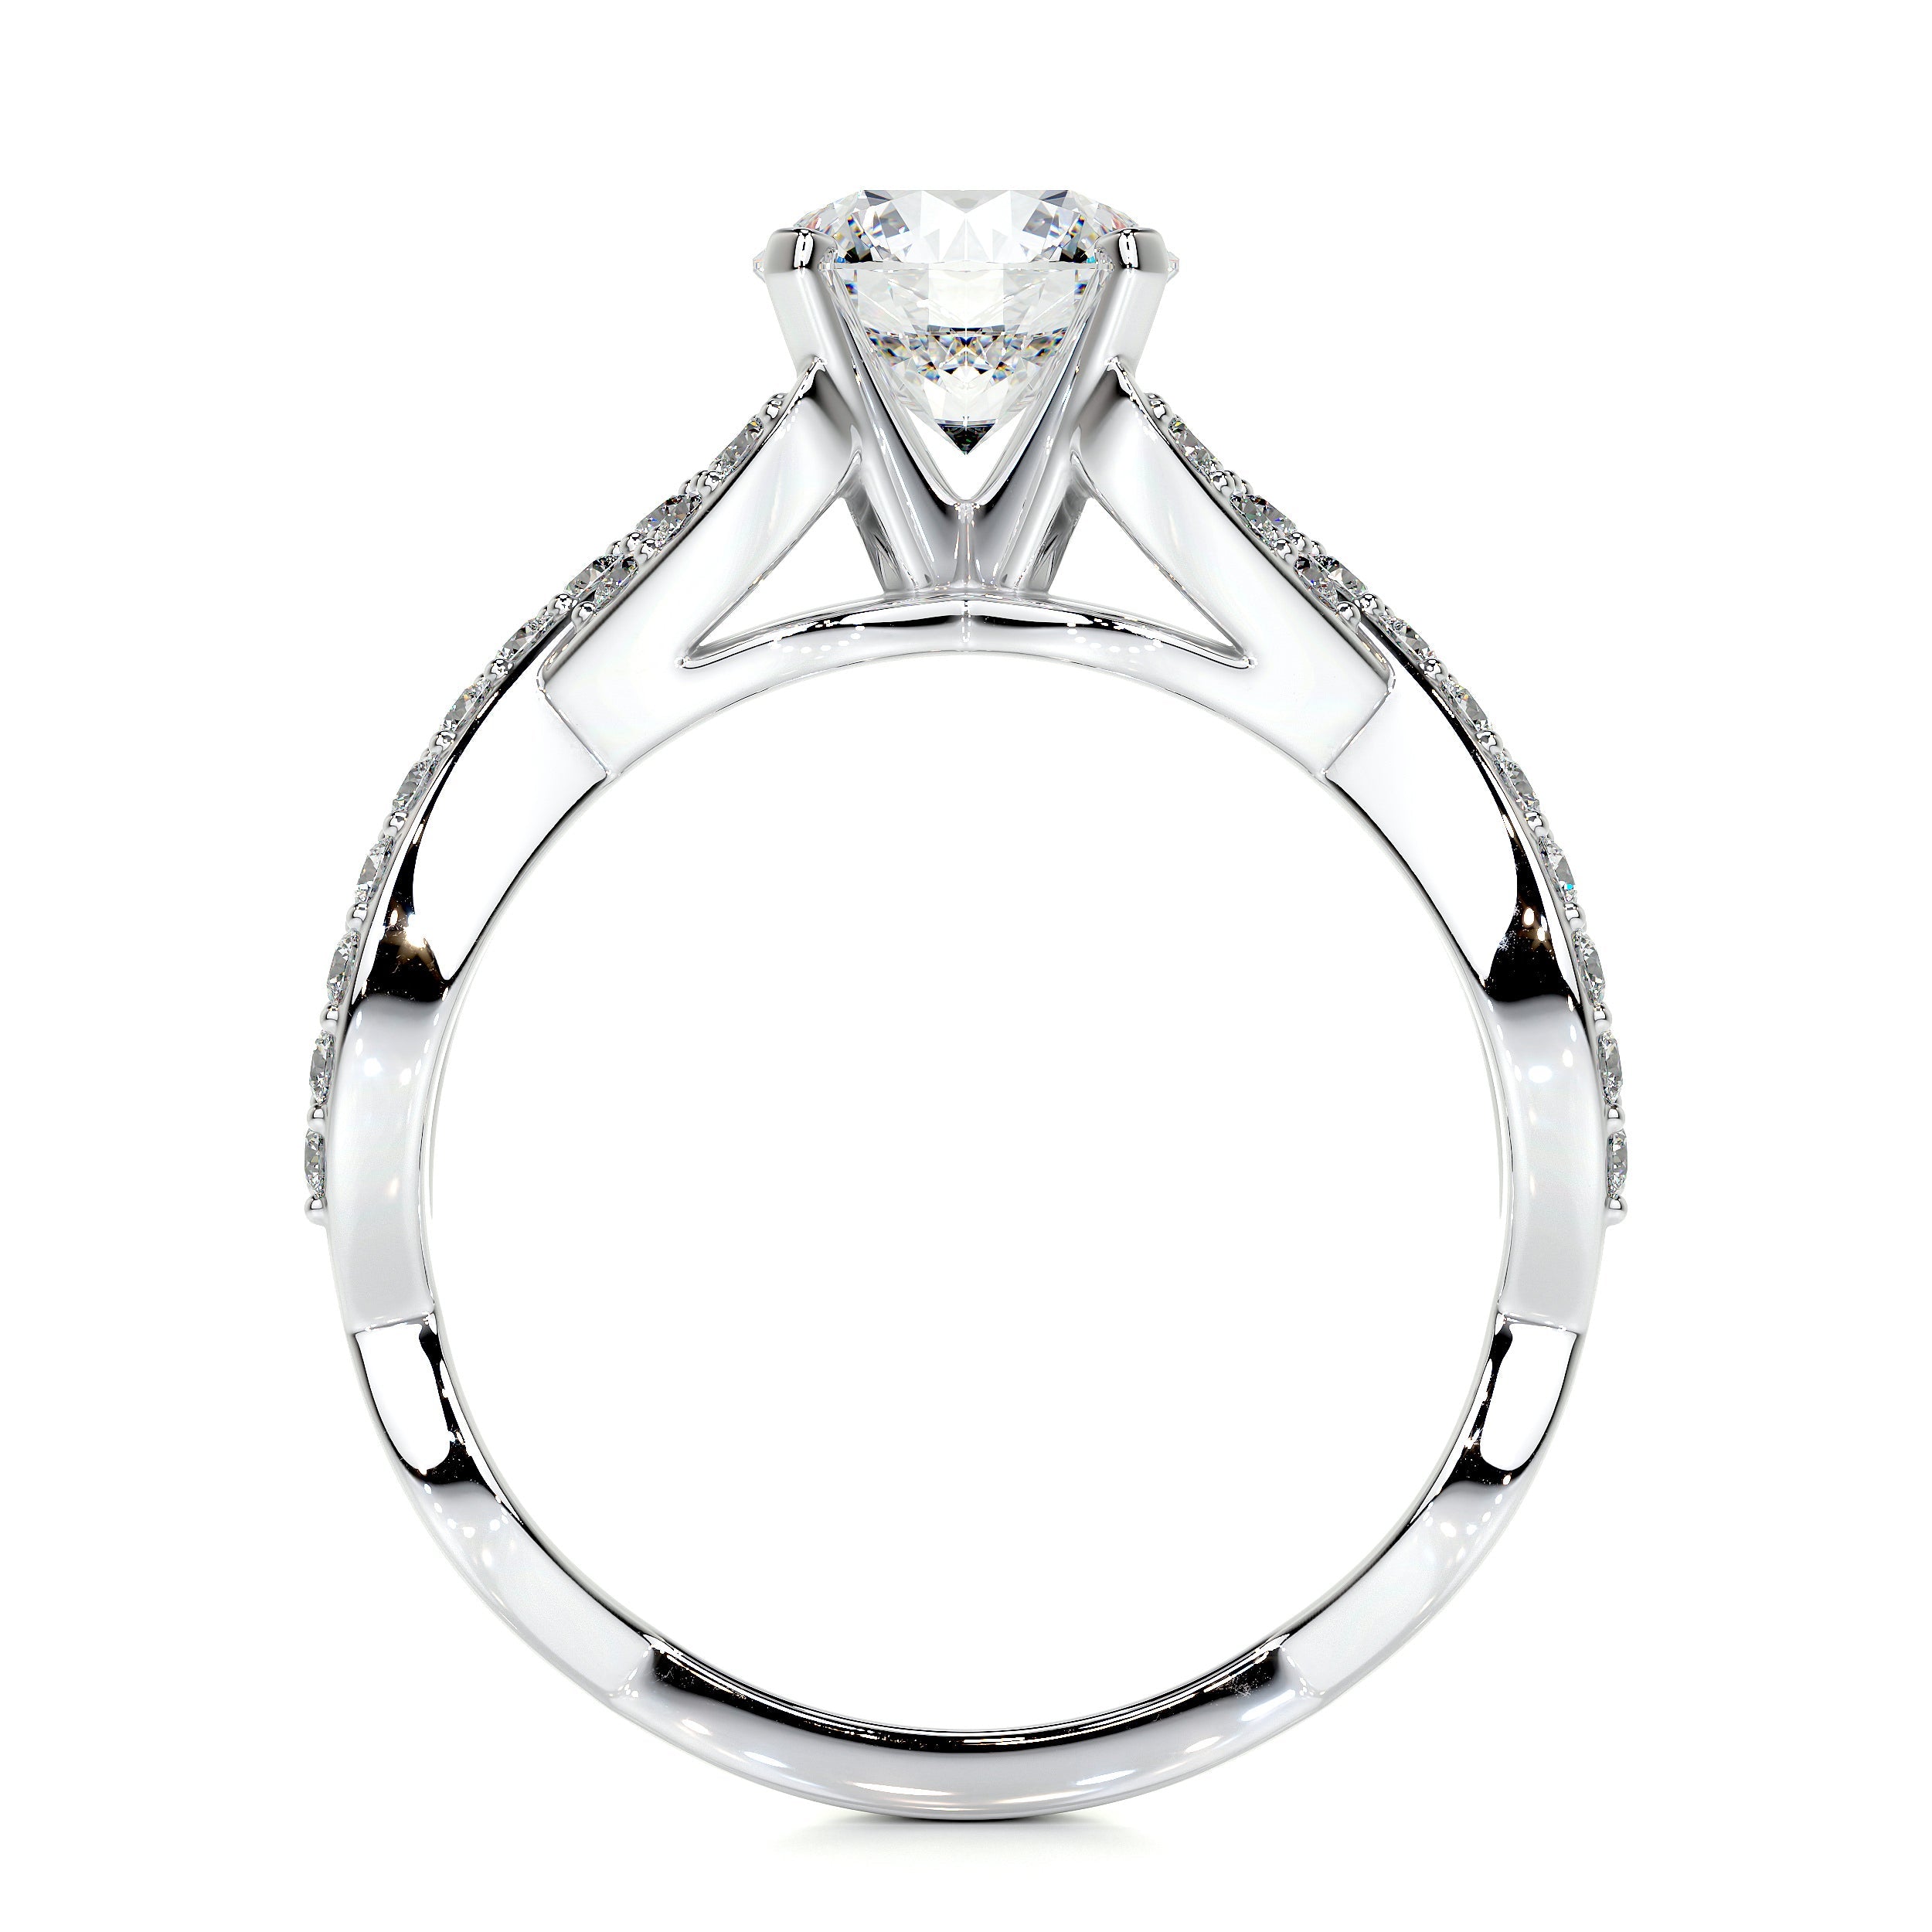 Emery Lab Grown Diamond Ring   (1.50 Carat) -14K White Gold